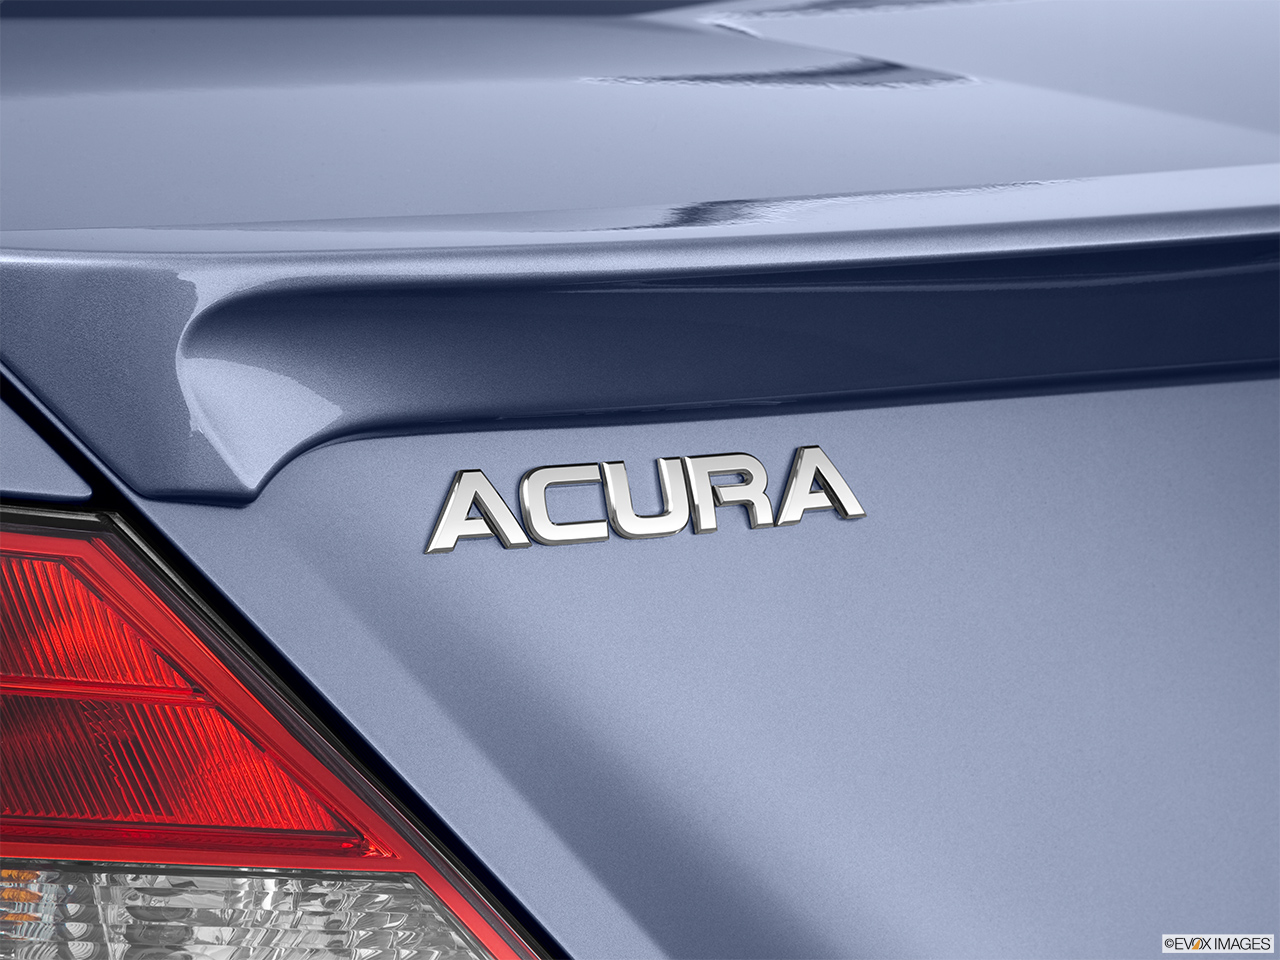 2012 Acura TL TL Rear model badge/emblem 